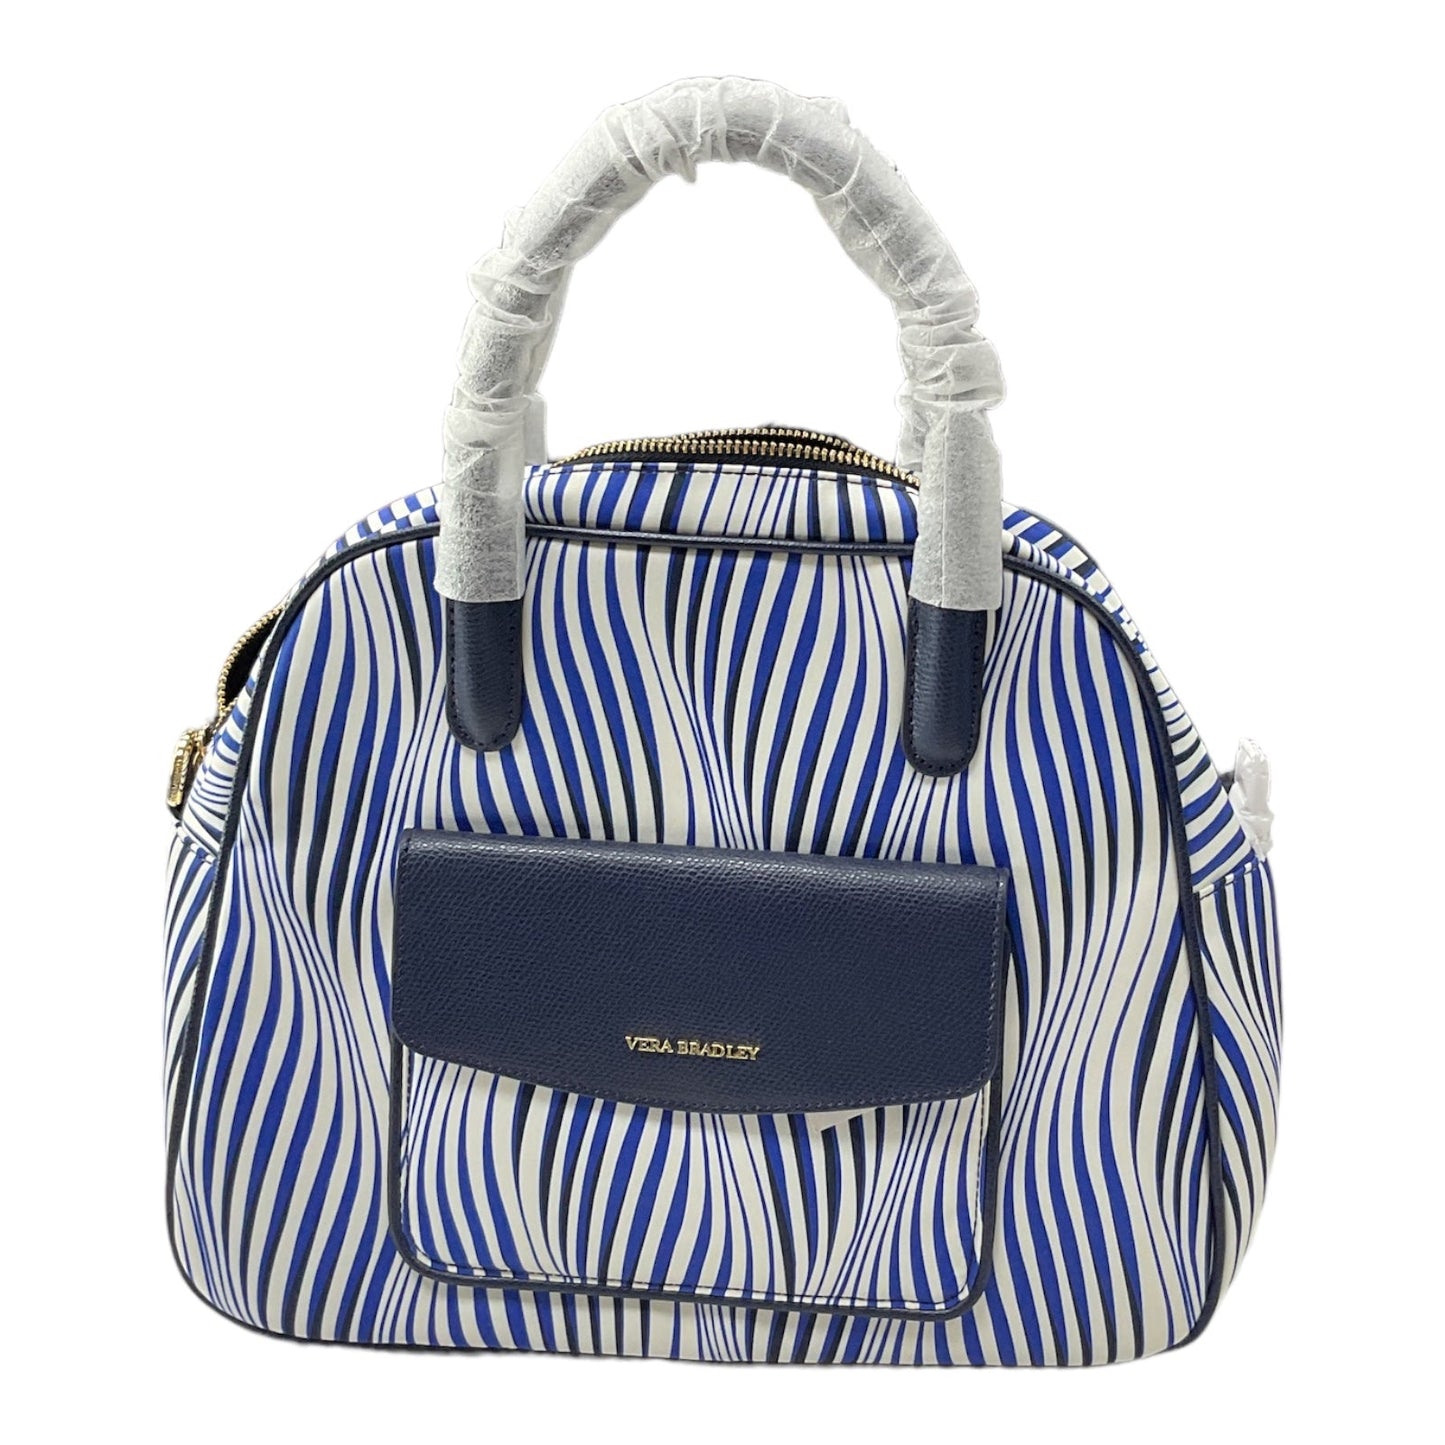 Handbag Vera Bradley, Size Medium